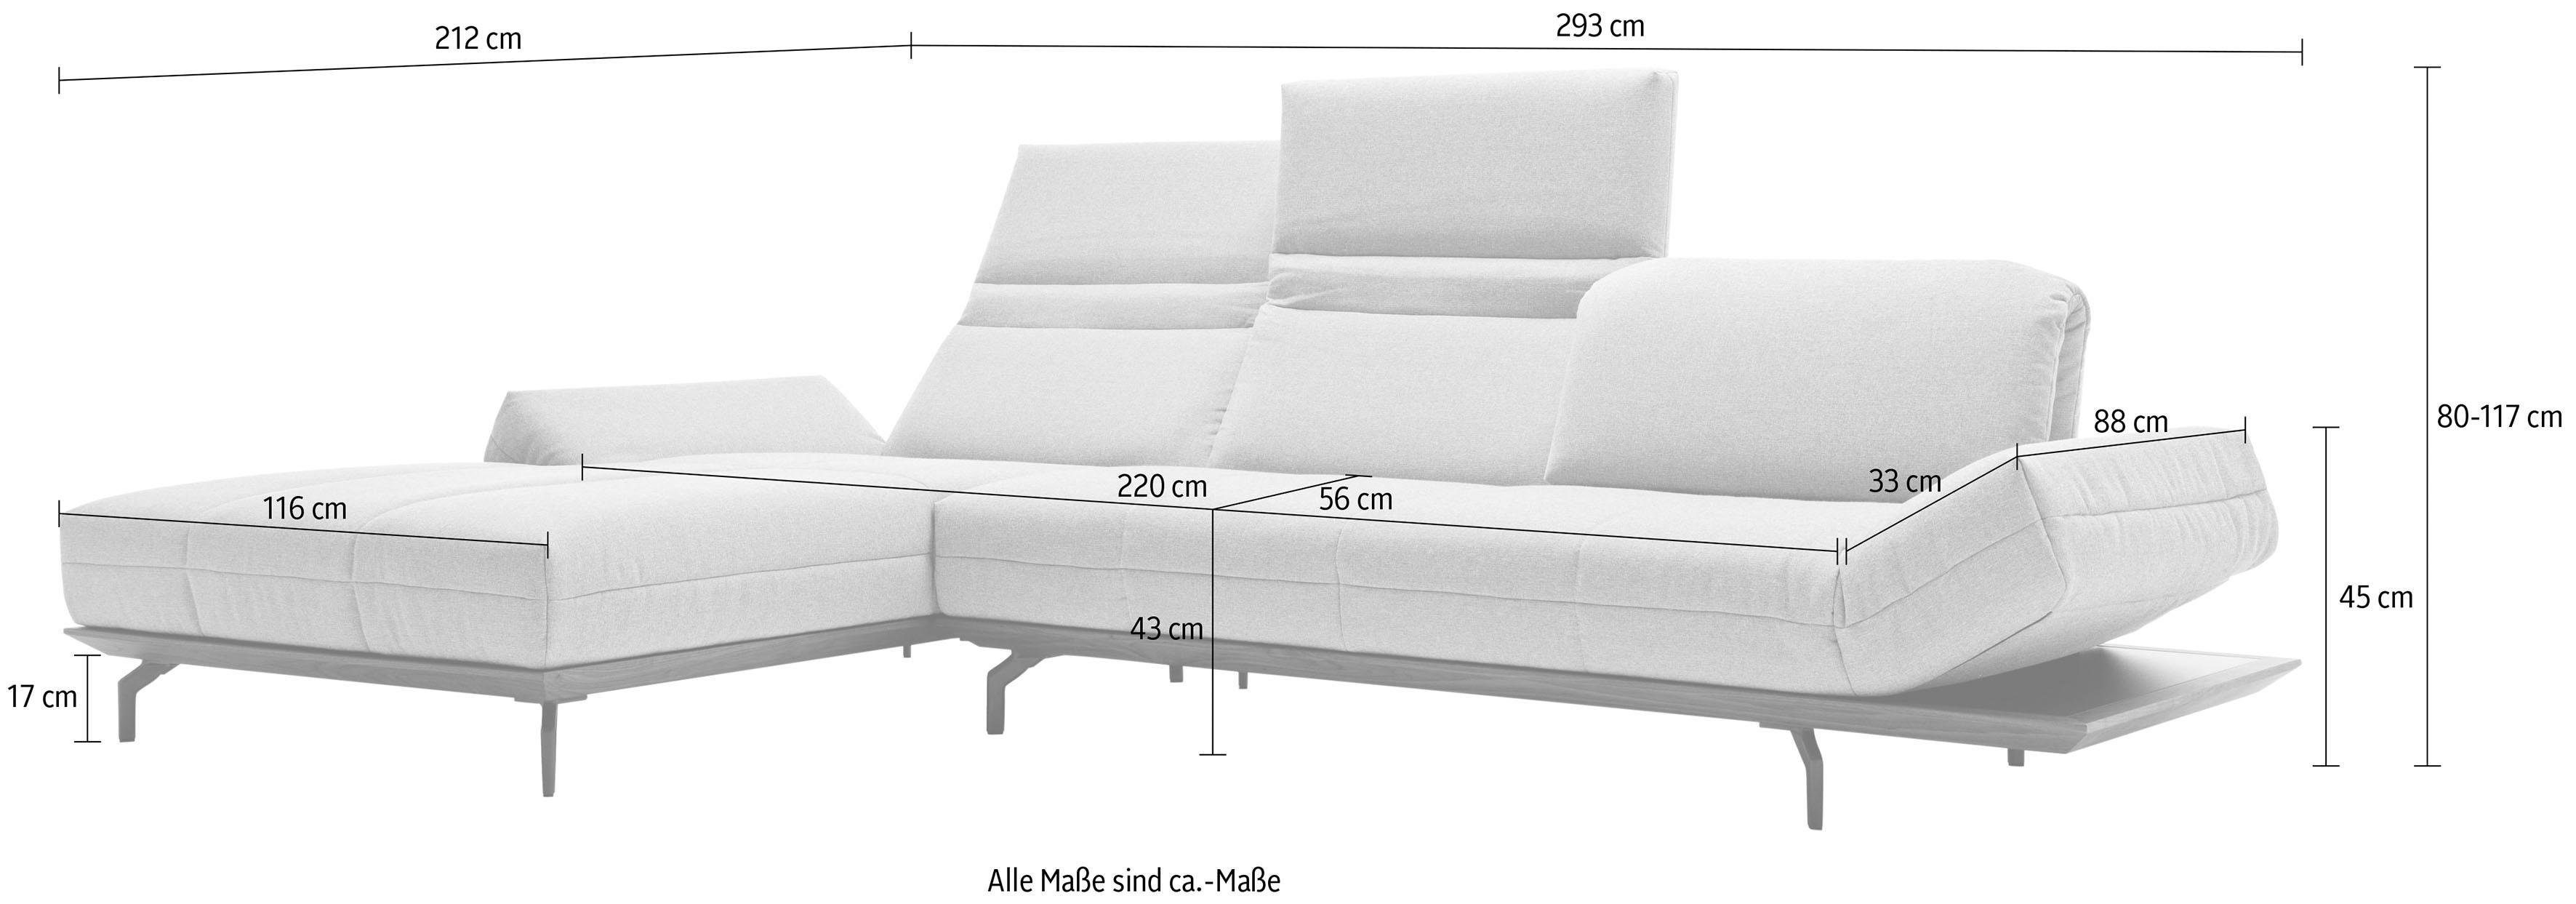 sofa cm 2 Ecksofa Eiche 293 in in Breite oder Natur hs.420, Holzrahmen Nußbaum, Qualitäten, hülsta